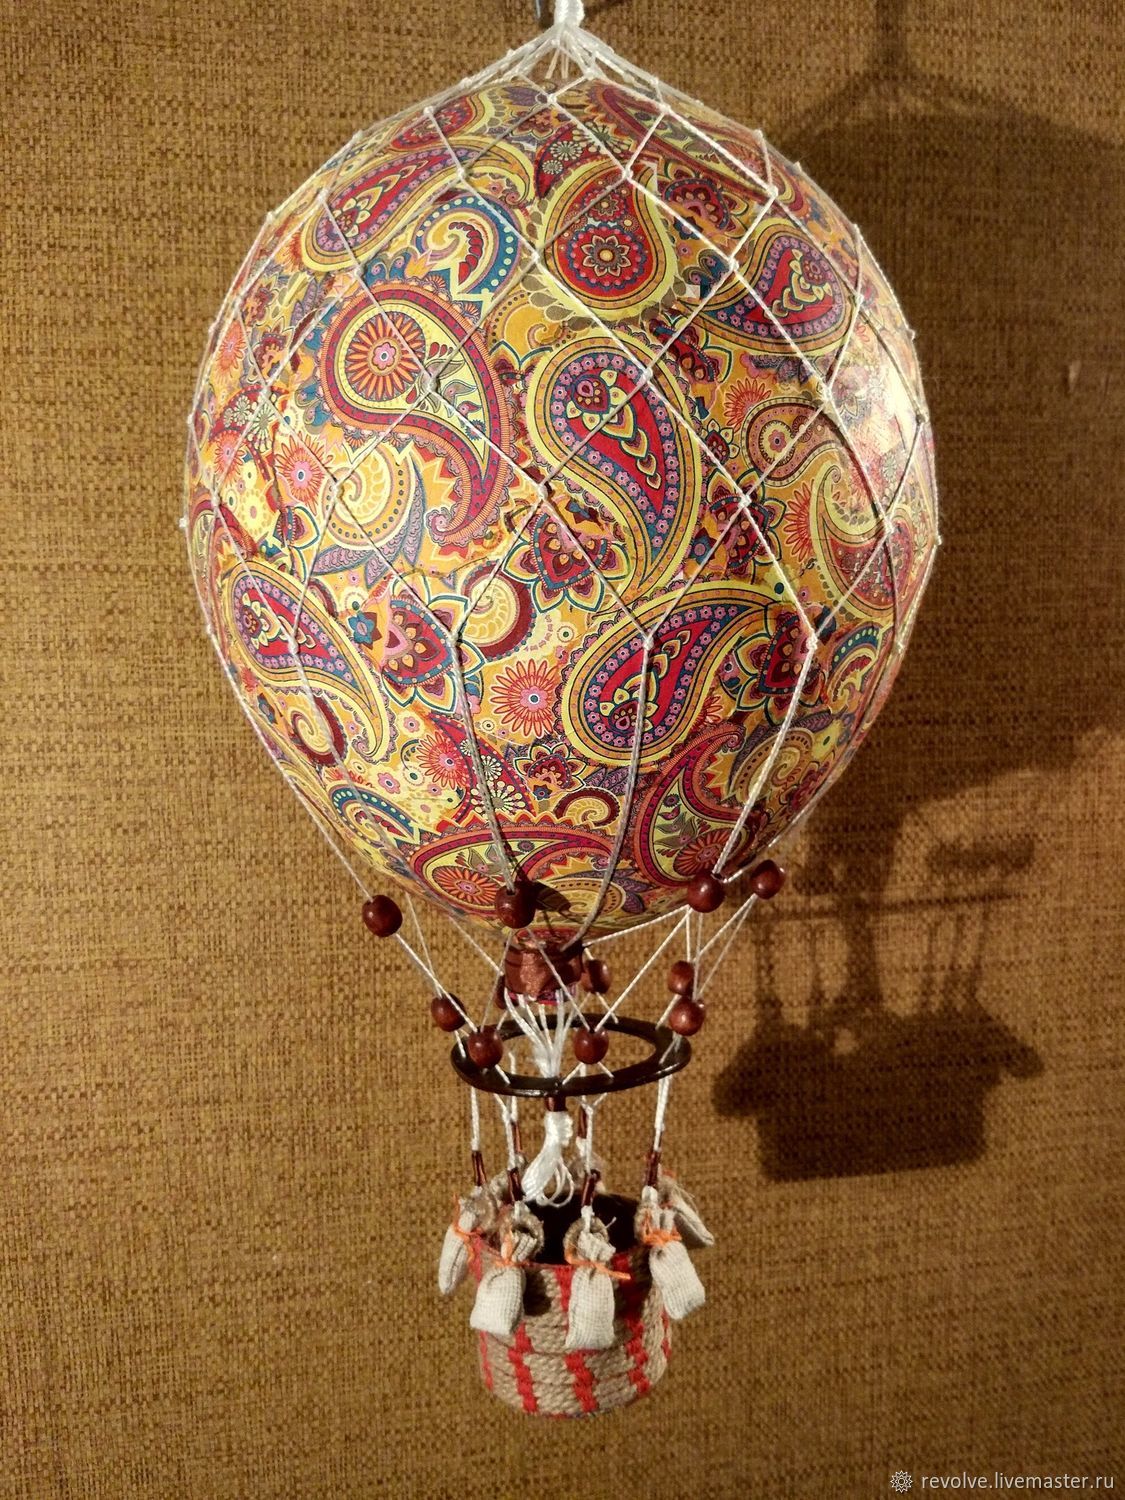 Макеты воздушных шаров. Елочная игрушка воздушный шар. Макет воздушного шара. Елочная игрушка СССР воздушный шар. Макет из большого воздушного шара.